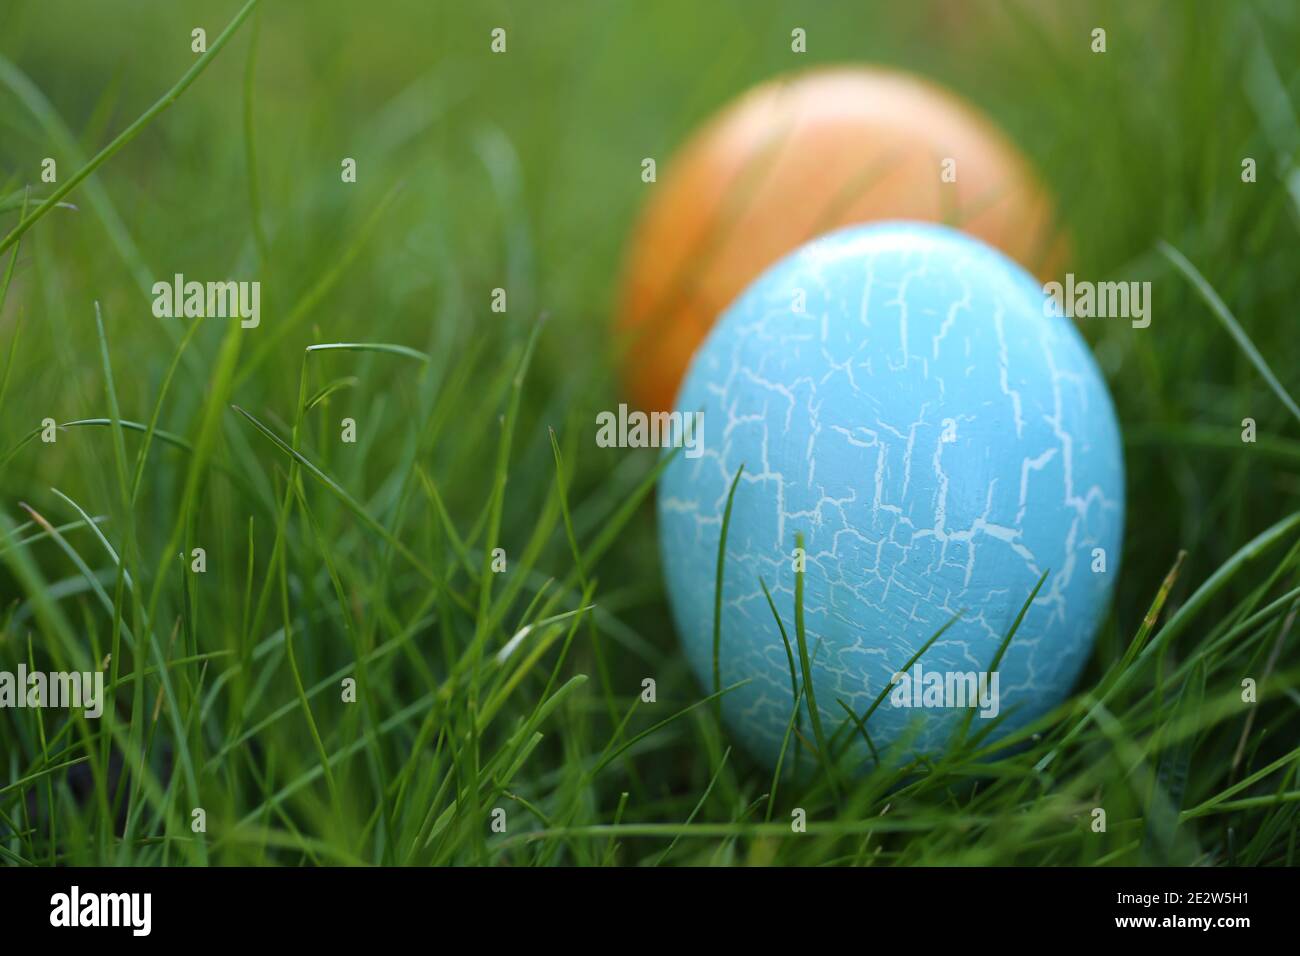 Pasqua uovo Hunt.Pasqua vacanza. Ricerca di uova di Pasqua in erba. Blu e arancio Pasqua dipinto uovo in verde primavera erba.Primavera festa pasqua Foto Stock